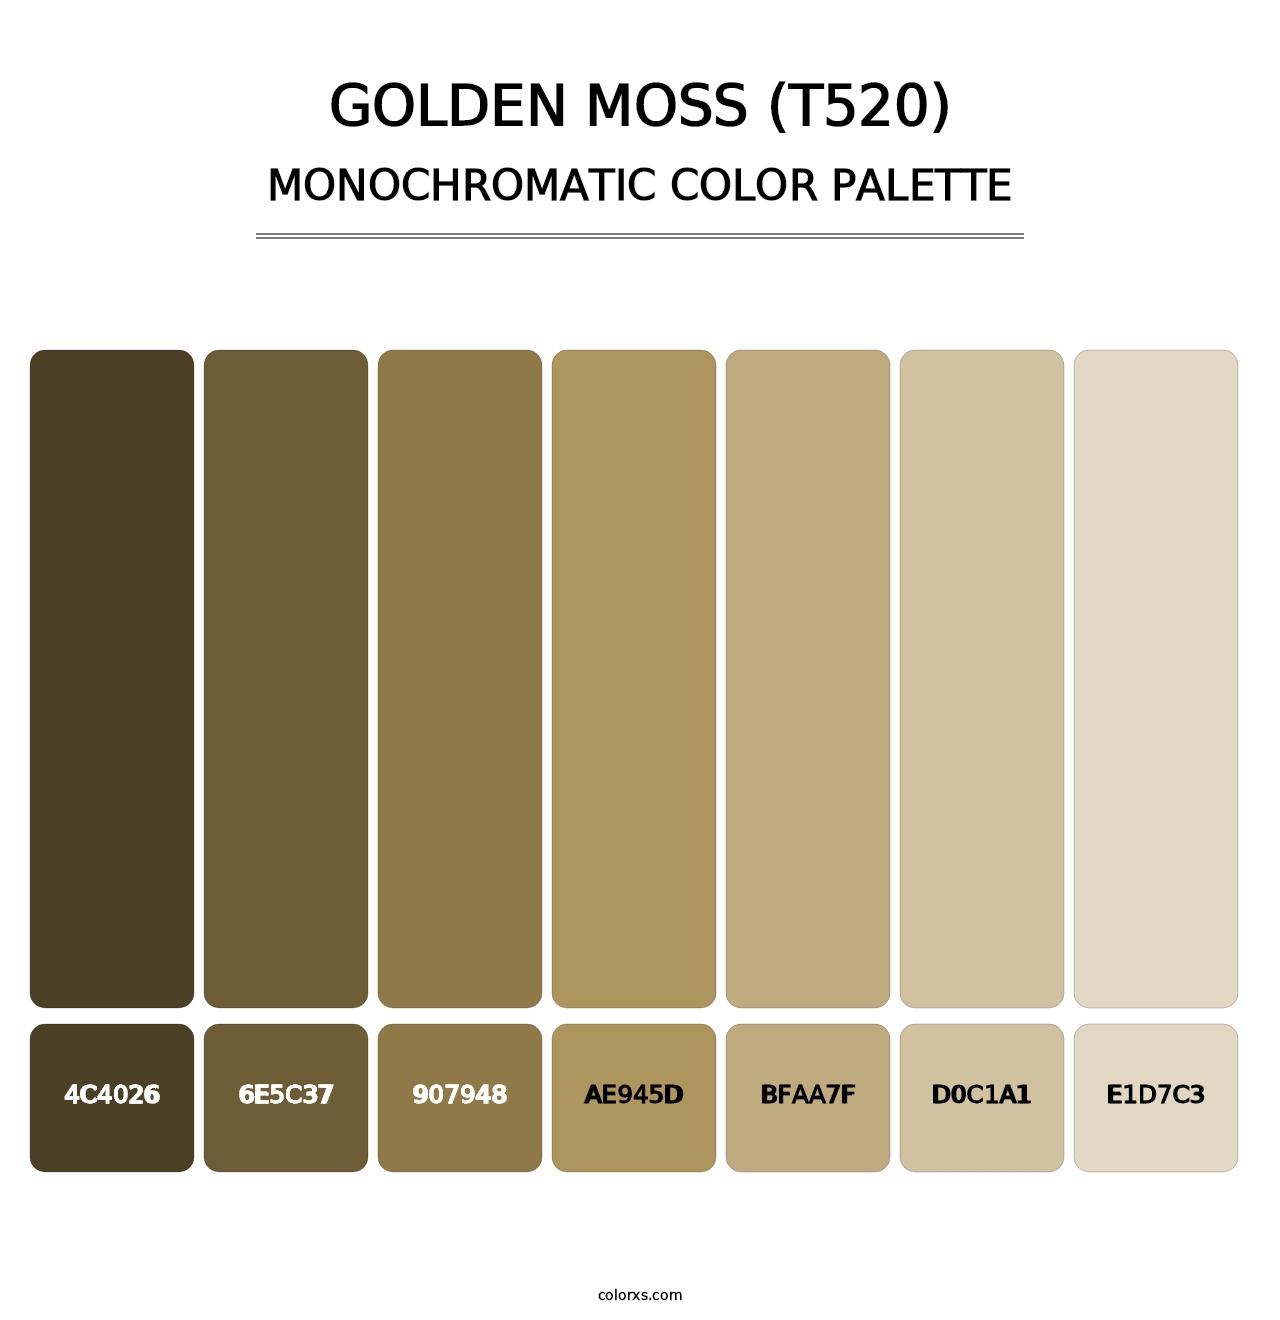 Golden Moss (T520) - Monochromatic Color Palette